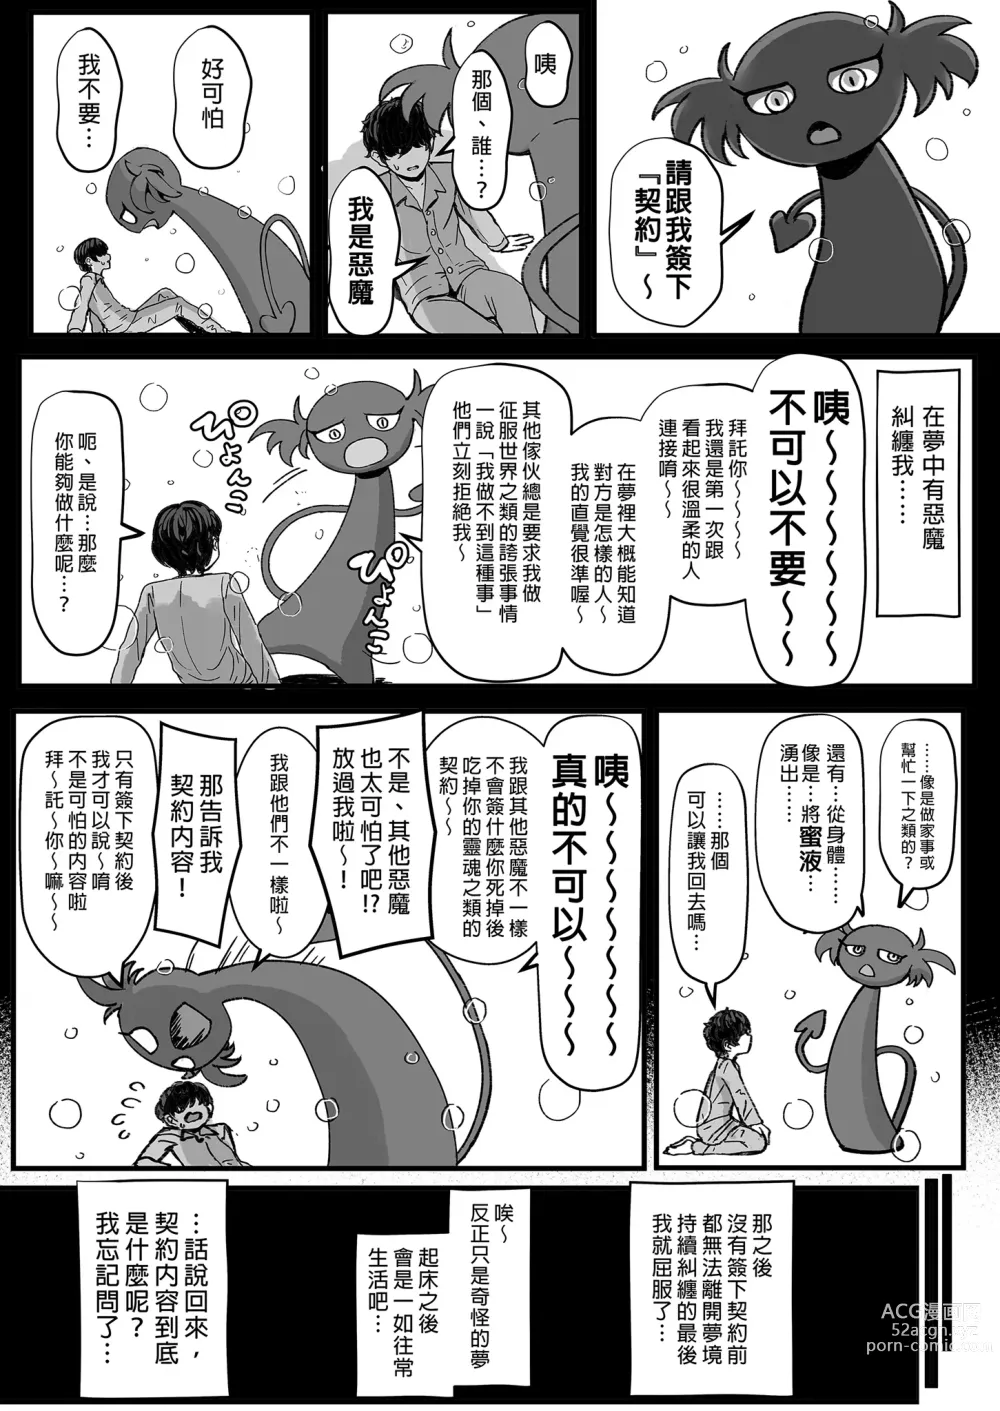 Page 3 of doujinshi 享用主人的黑辣妹女僕淫魔。 (decensored)